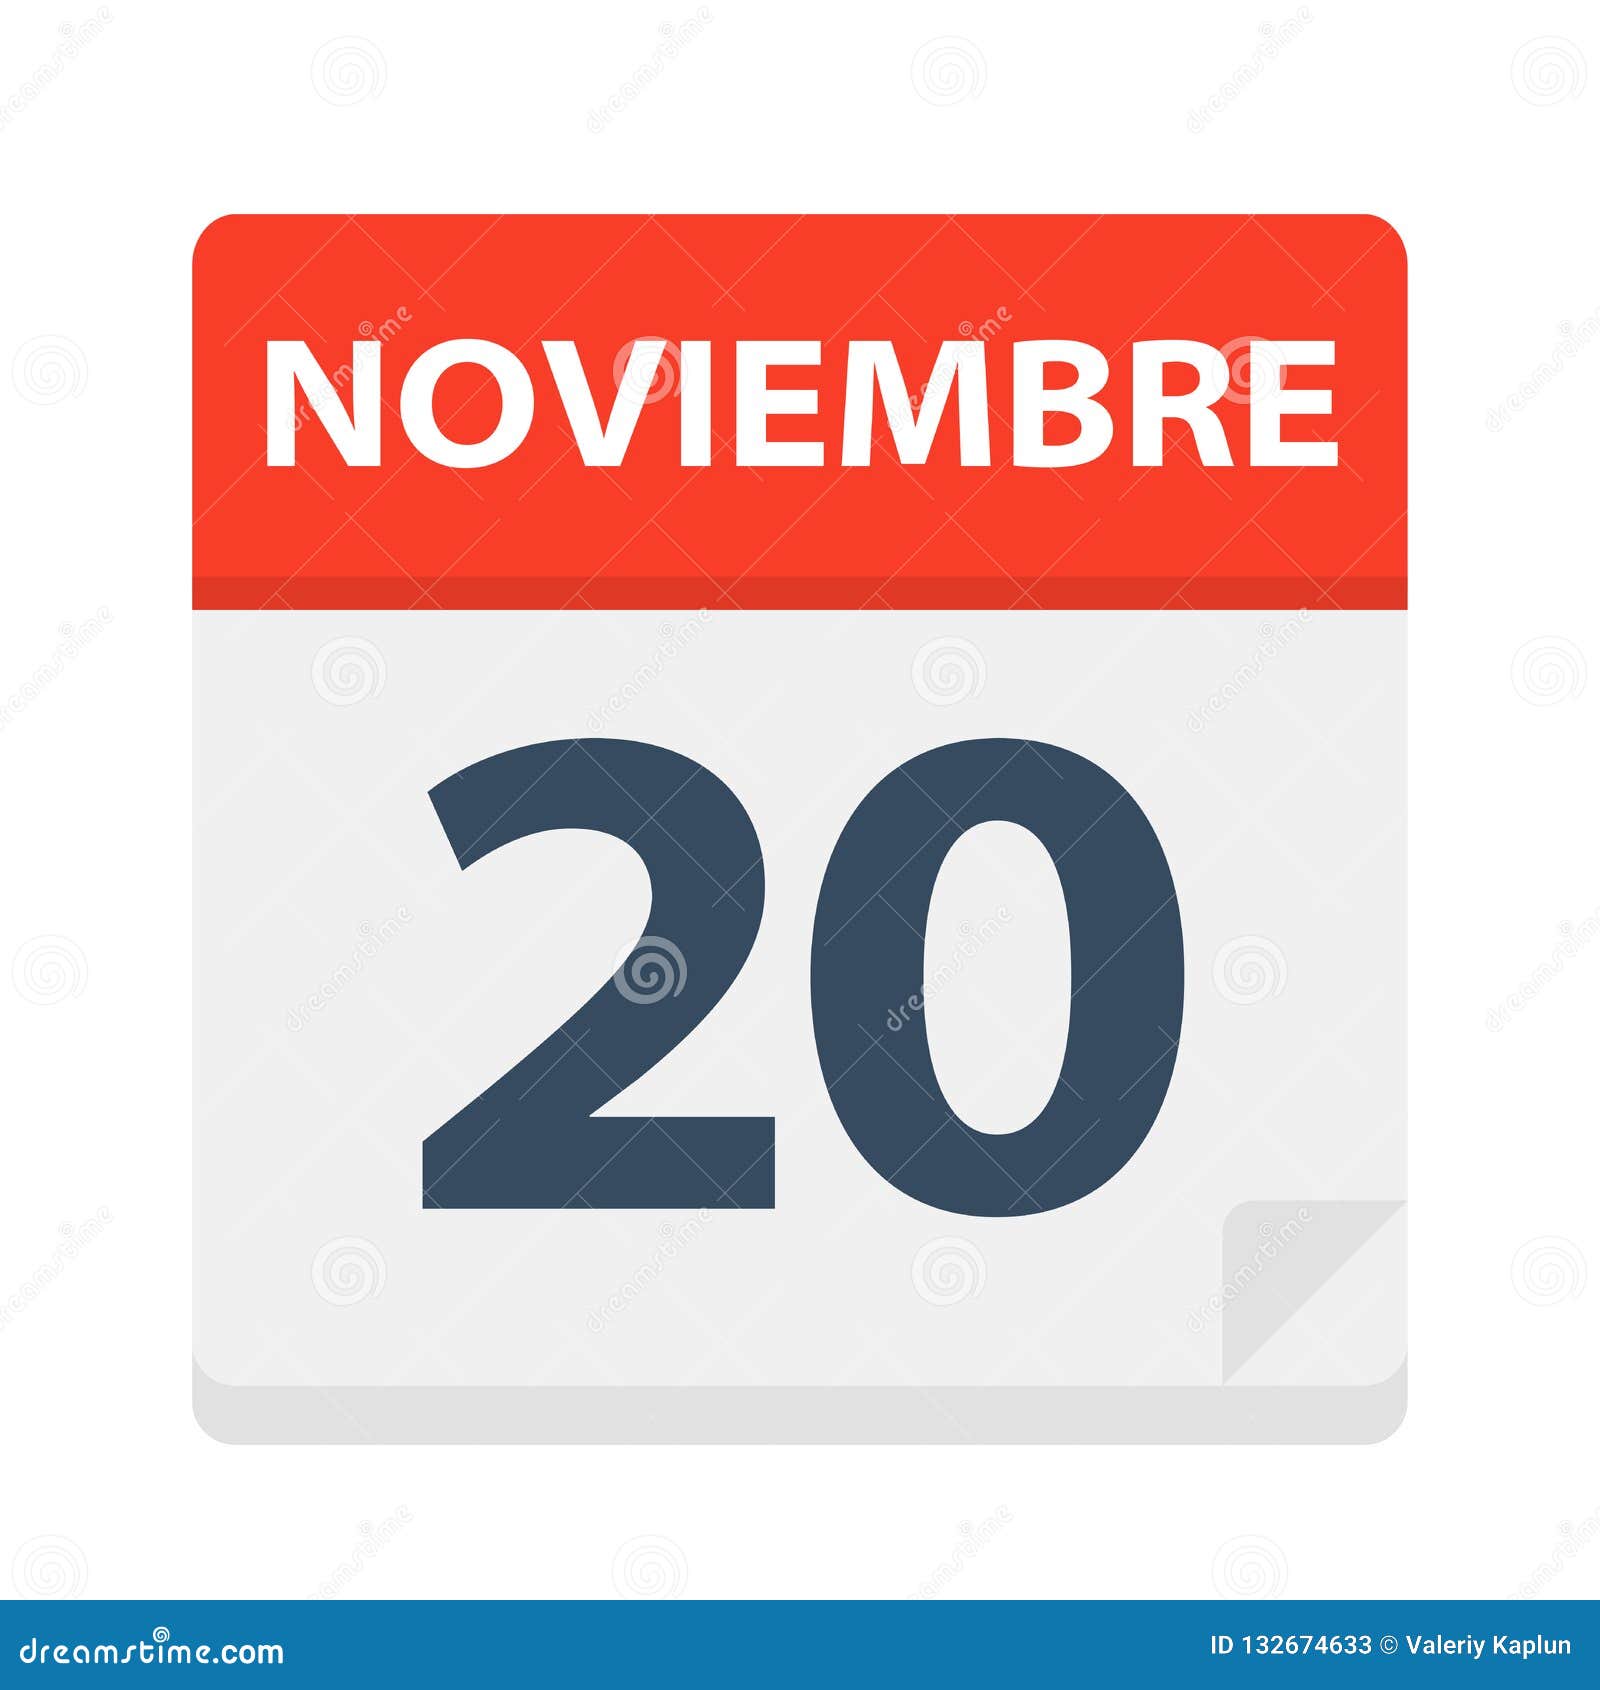 noviembre 20 - calendar icon - november 20.   of spanish calendar leaf